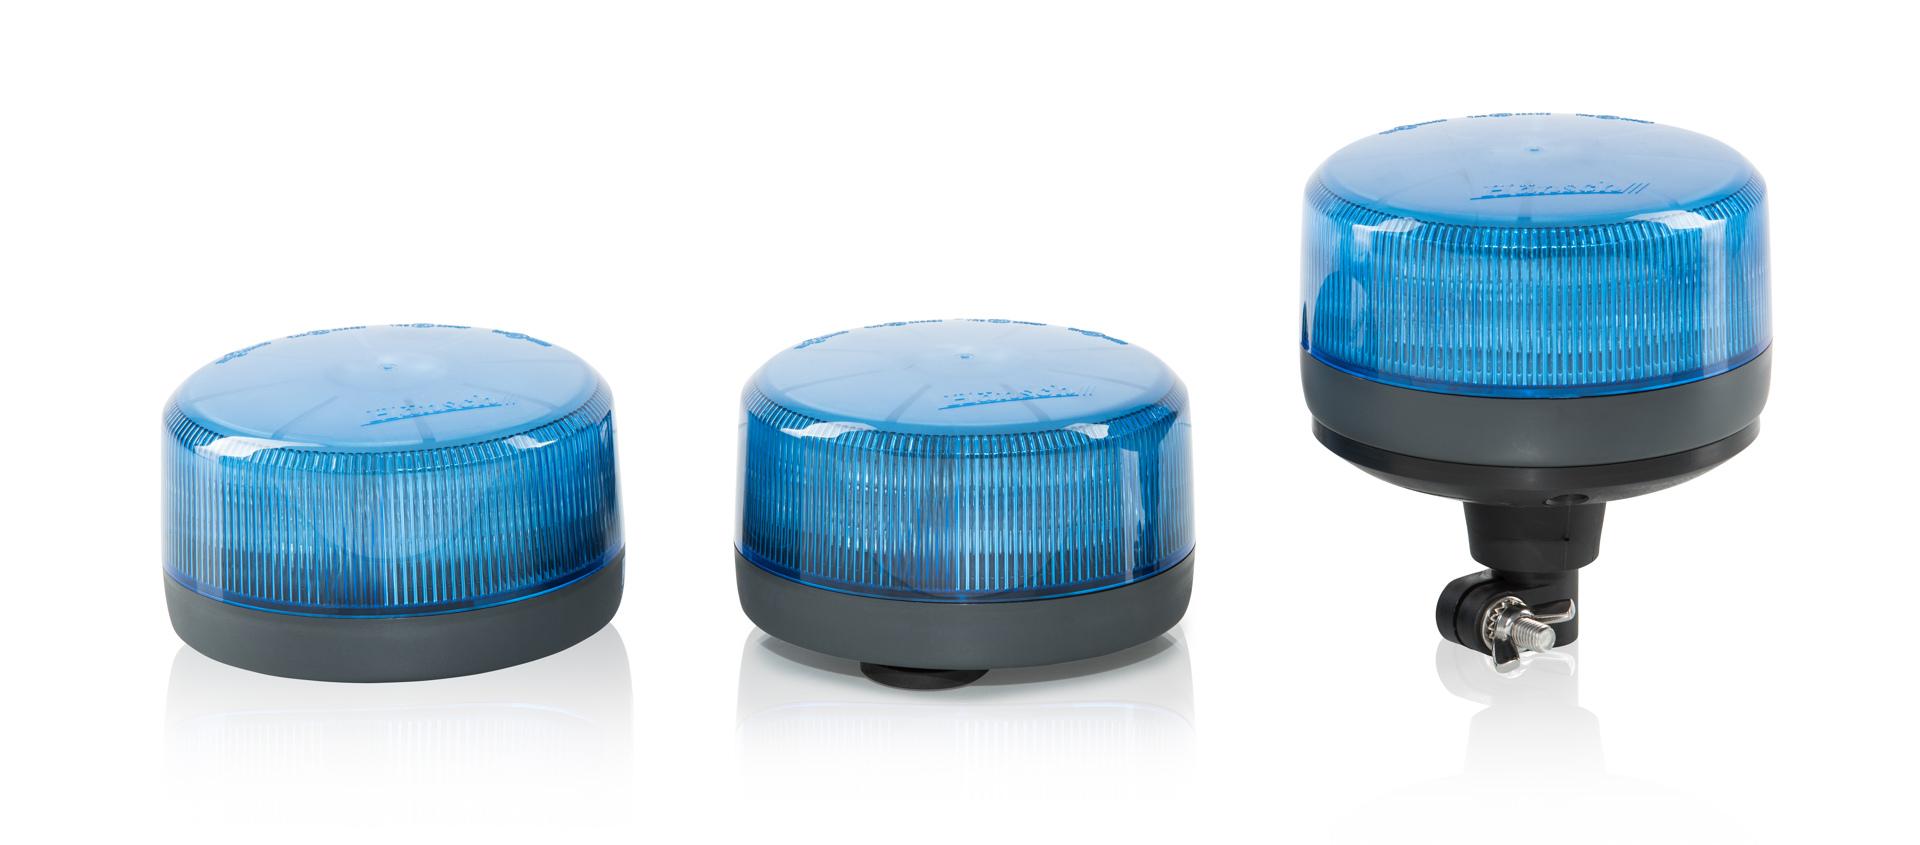 Hänsch GmbH - COMET S - Kennleuchten LED Technik - Einsatzgebiet blau -  Produkte